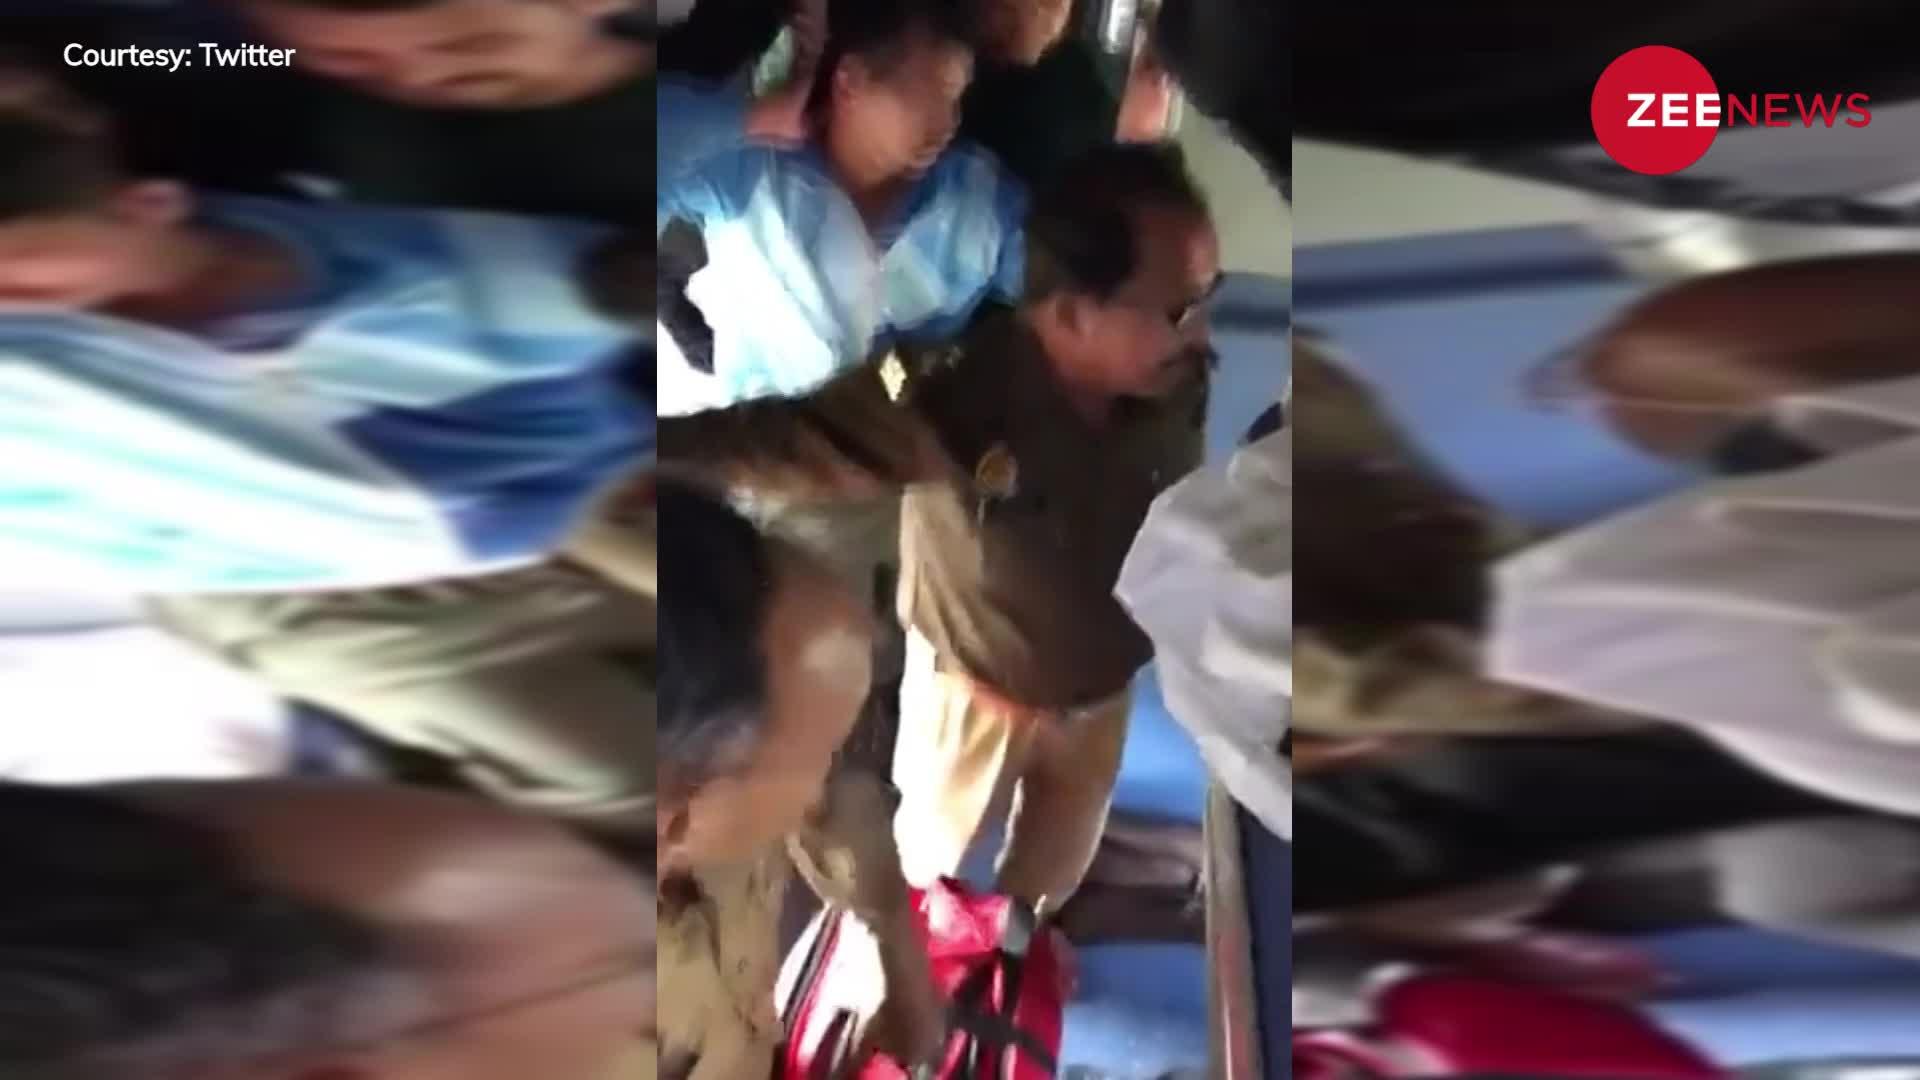 Viral: बिना टिकट ट्रेन में चढ़ें पुलिसकर्मी ने दी नीचे फेंकने की धमकी, तो TTE ने दिया ऐसे मुंहतोड़ जवाब, वीडियो वायरल